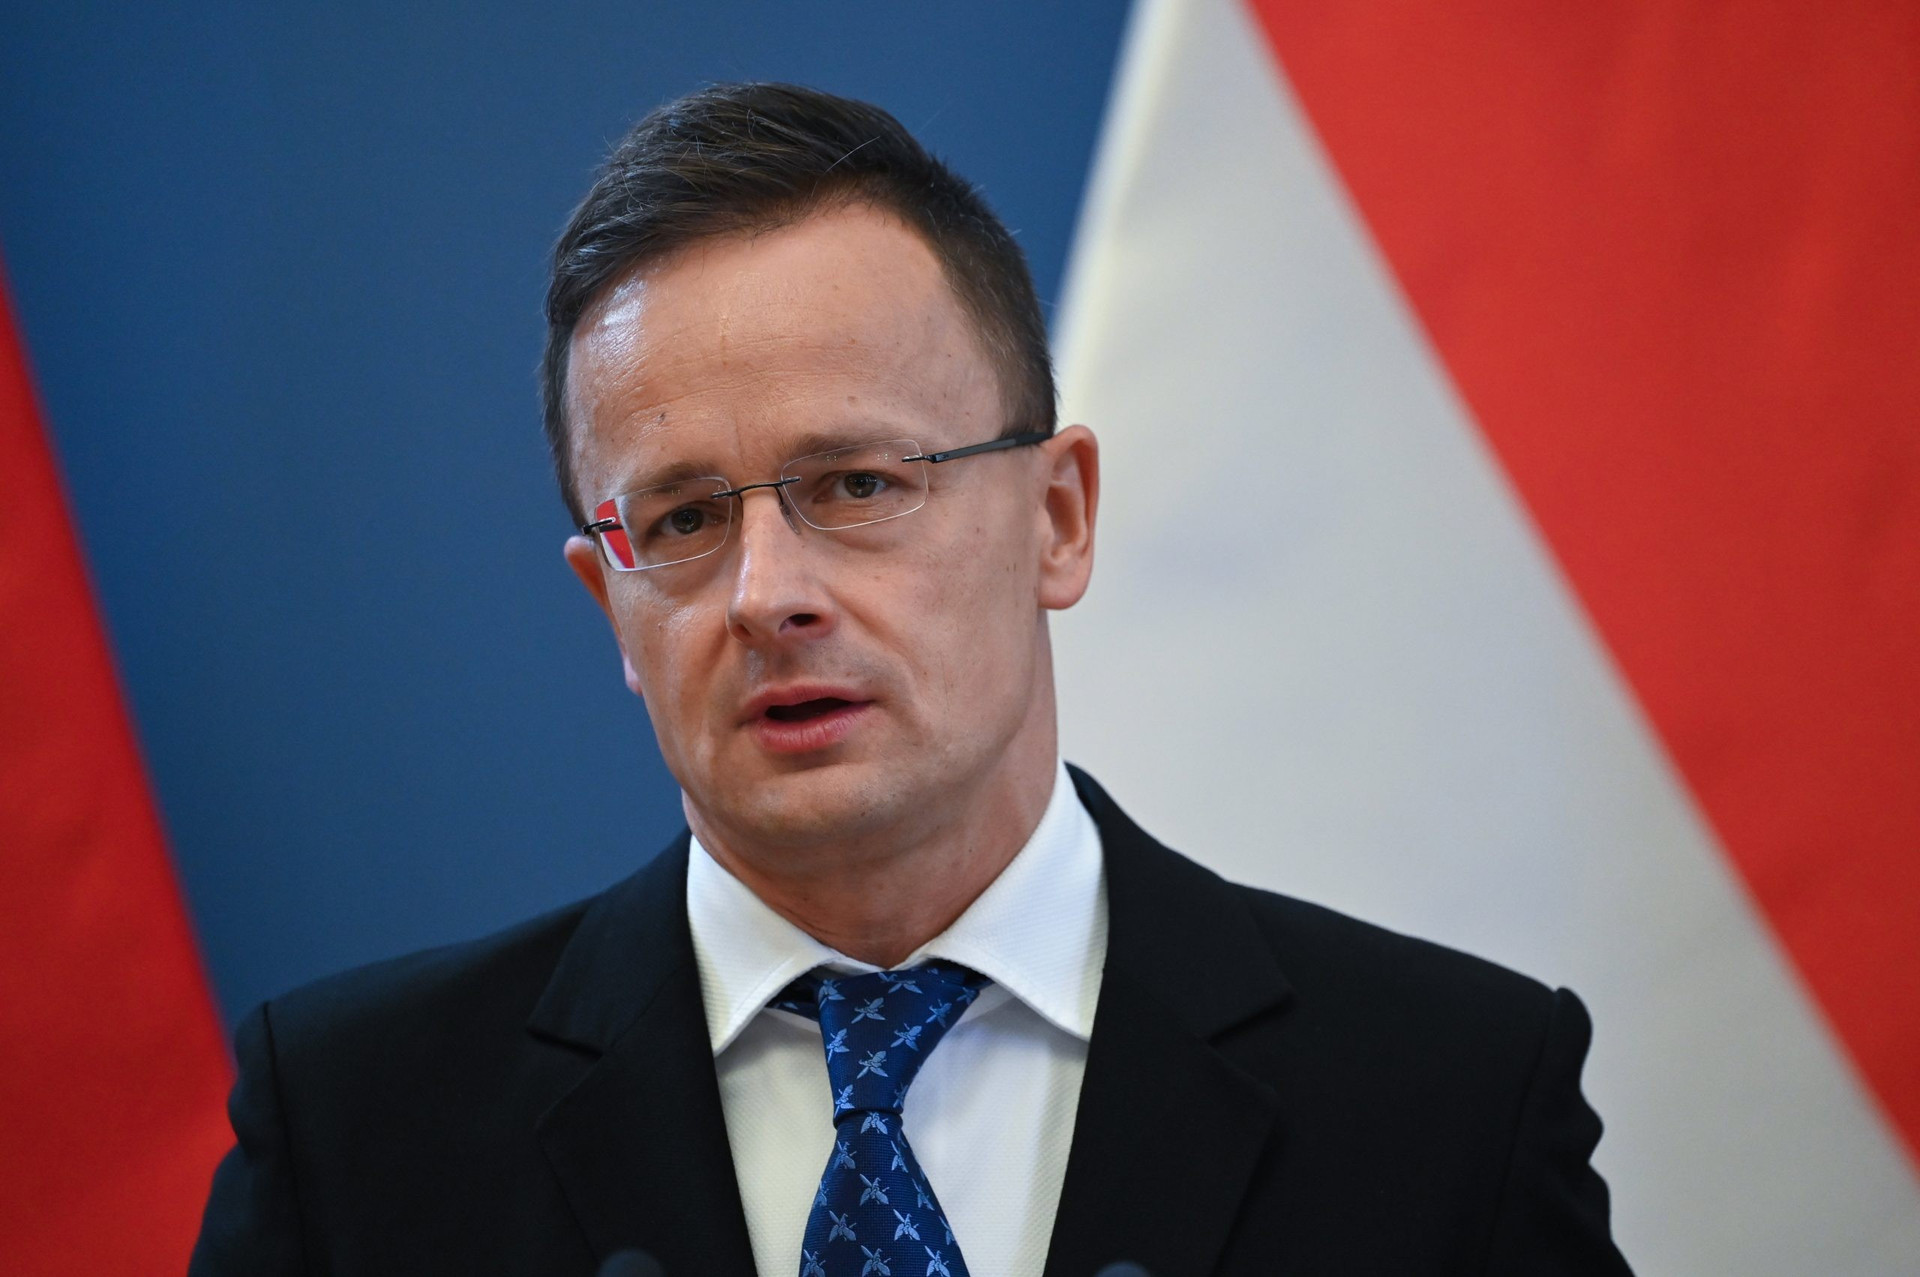 Ngoại trưởng Hungary: Hợp tác với Trung Quốc mang lại lợi ích to lớn